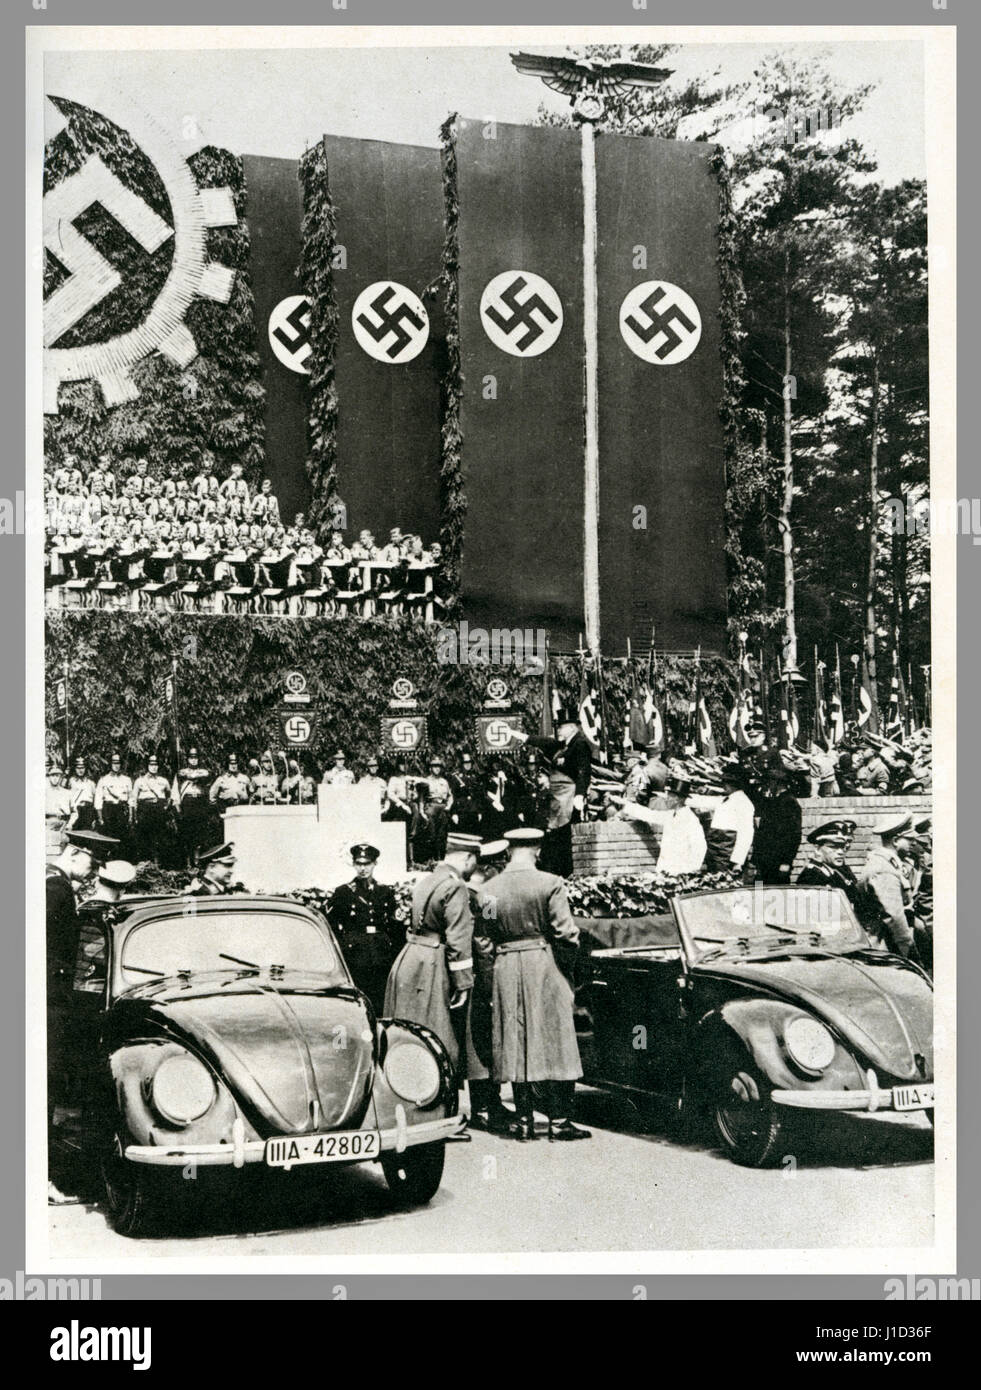 KDF -Wagen Volkswagen lanzamiento Alemania propaganda imagen 26 de mayo de 1938 fundación de piedra de colocación ceremonia en la fábrica de Wolfsleben Wolfsburg Volkswagen con nuevos coches KdF -Wagen (fuerza a través de la alegría) en exhibición bajo las banderas nazis de Swastika Foto de stock